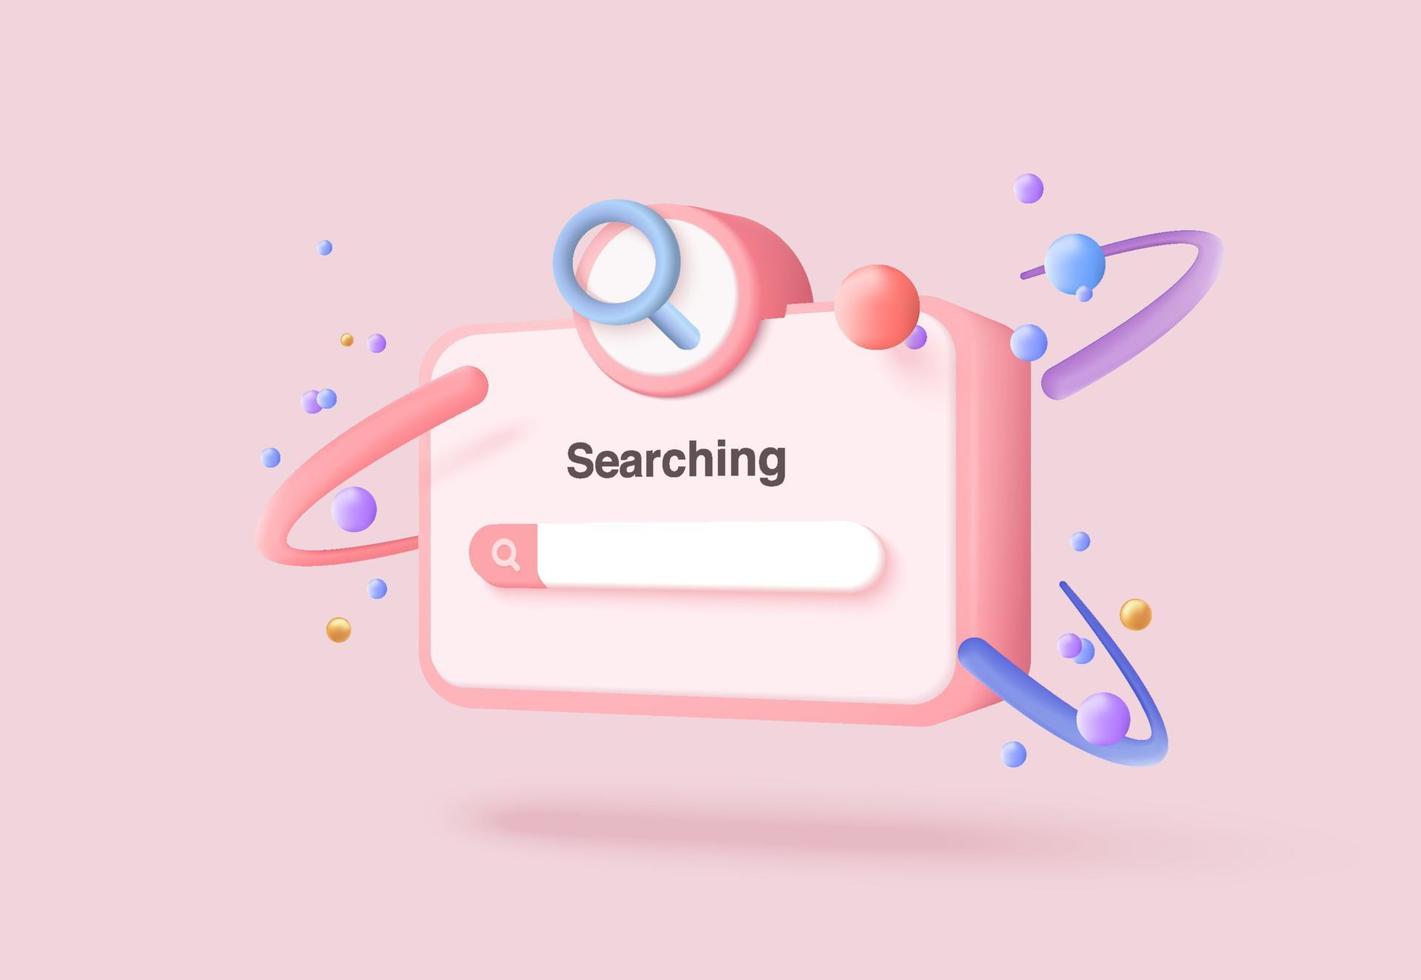 Barra de búsqueda mínima 3d o lupa en la barra de búsqueda en blanco sobre fondo rosa. elemento de diseño de la barra de búsqueda en el navegador web. Renderizado de lupa de vector 3d para ilustración de interfaz de usuario en fondo pastel